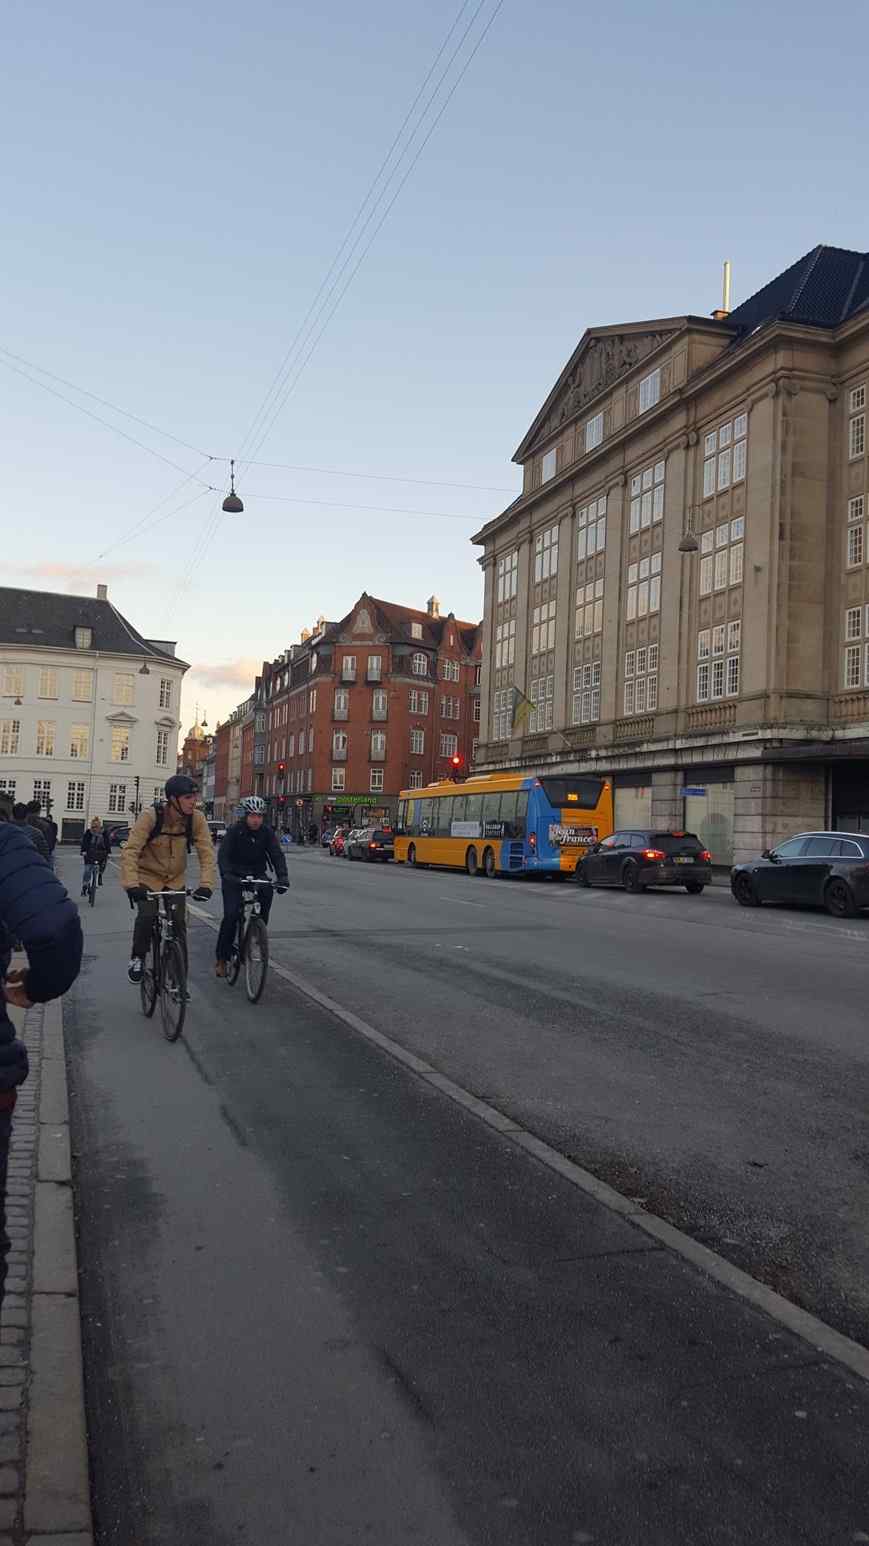 Ⅲ 우리가 방문한 주요장소 [덴마크] 자전거 전용도로 덴마크는 '자전거 왕국'이다. 출퇴근 시간에 구름처럼 떼지어 몰려 가는 자전거의 행렬, 그리고 국회나 주요 관공서 학교 상가 기차역 앞에 세워진 자전거를 보면 덴마크가 자전거 왕국임을 실감하지 않을 수 없다.